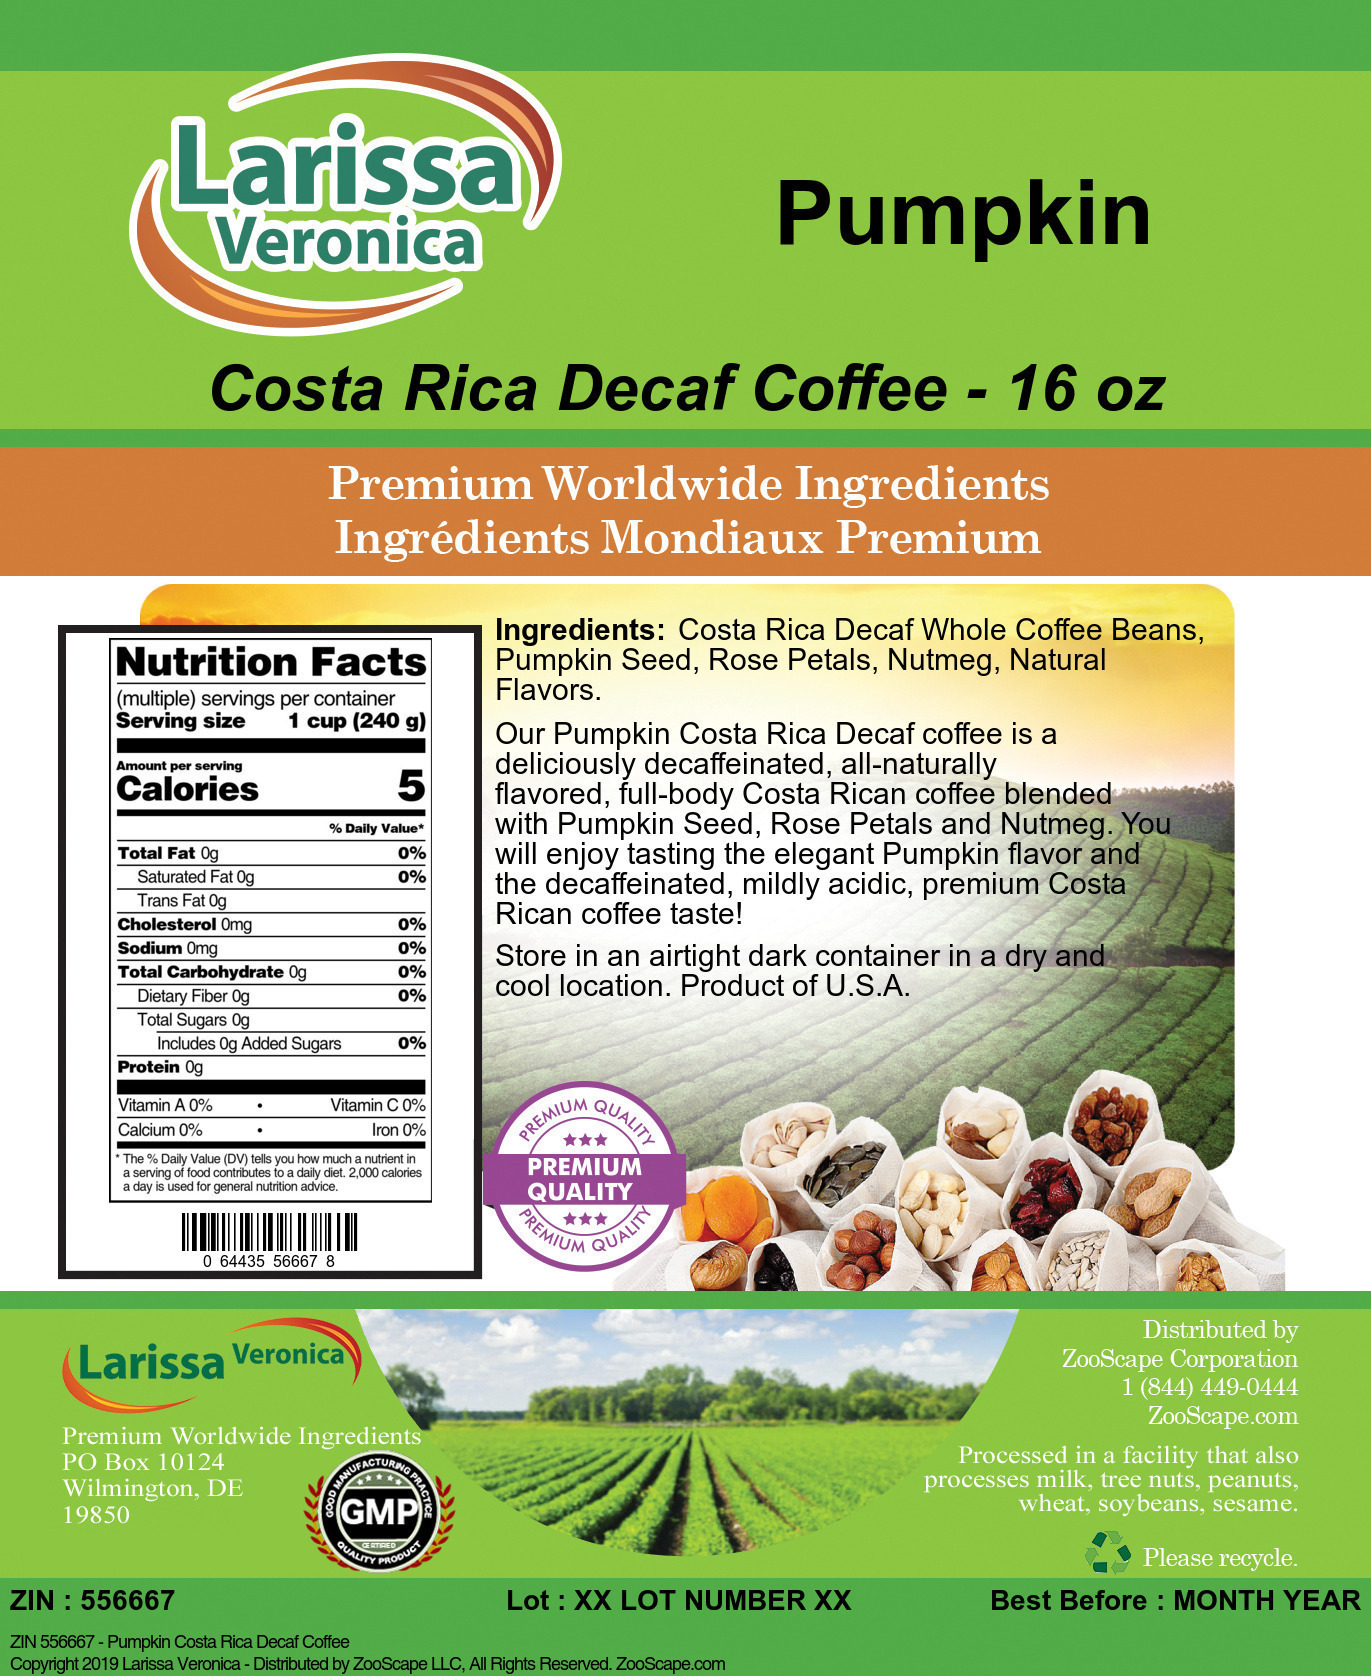 Pumpkin Costa Rica Decaf Coffee - Label